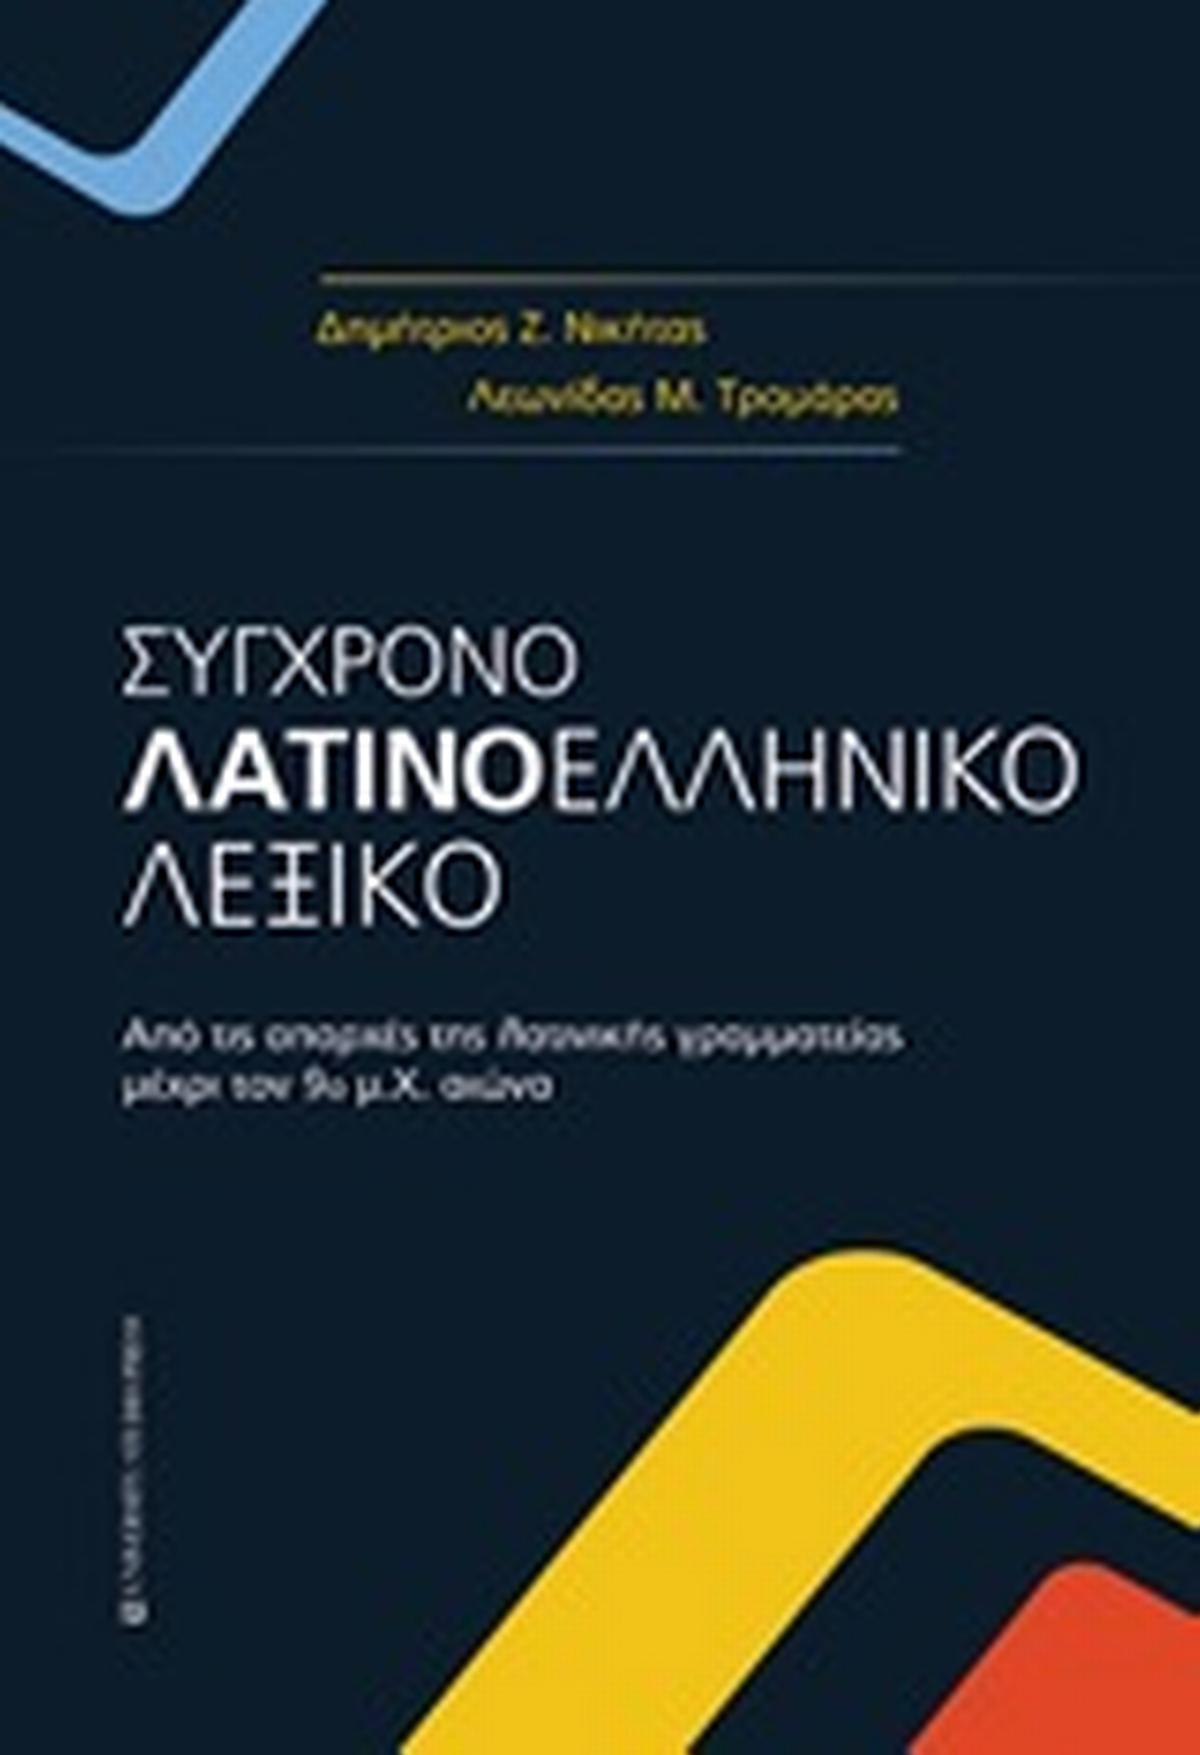 Σύγχρονο λατινοελληνικό λεξικό